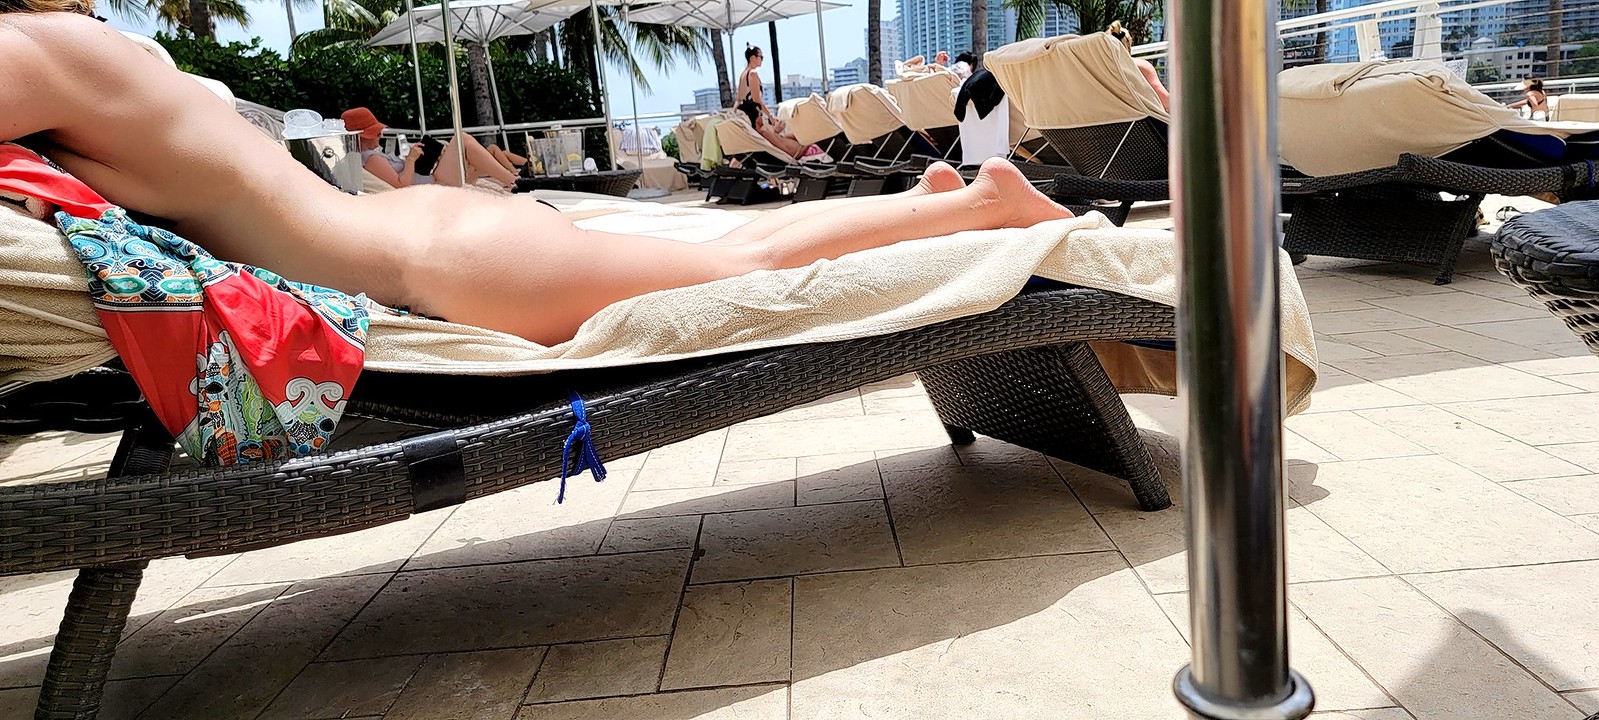 Nude Resort Sunning